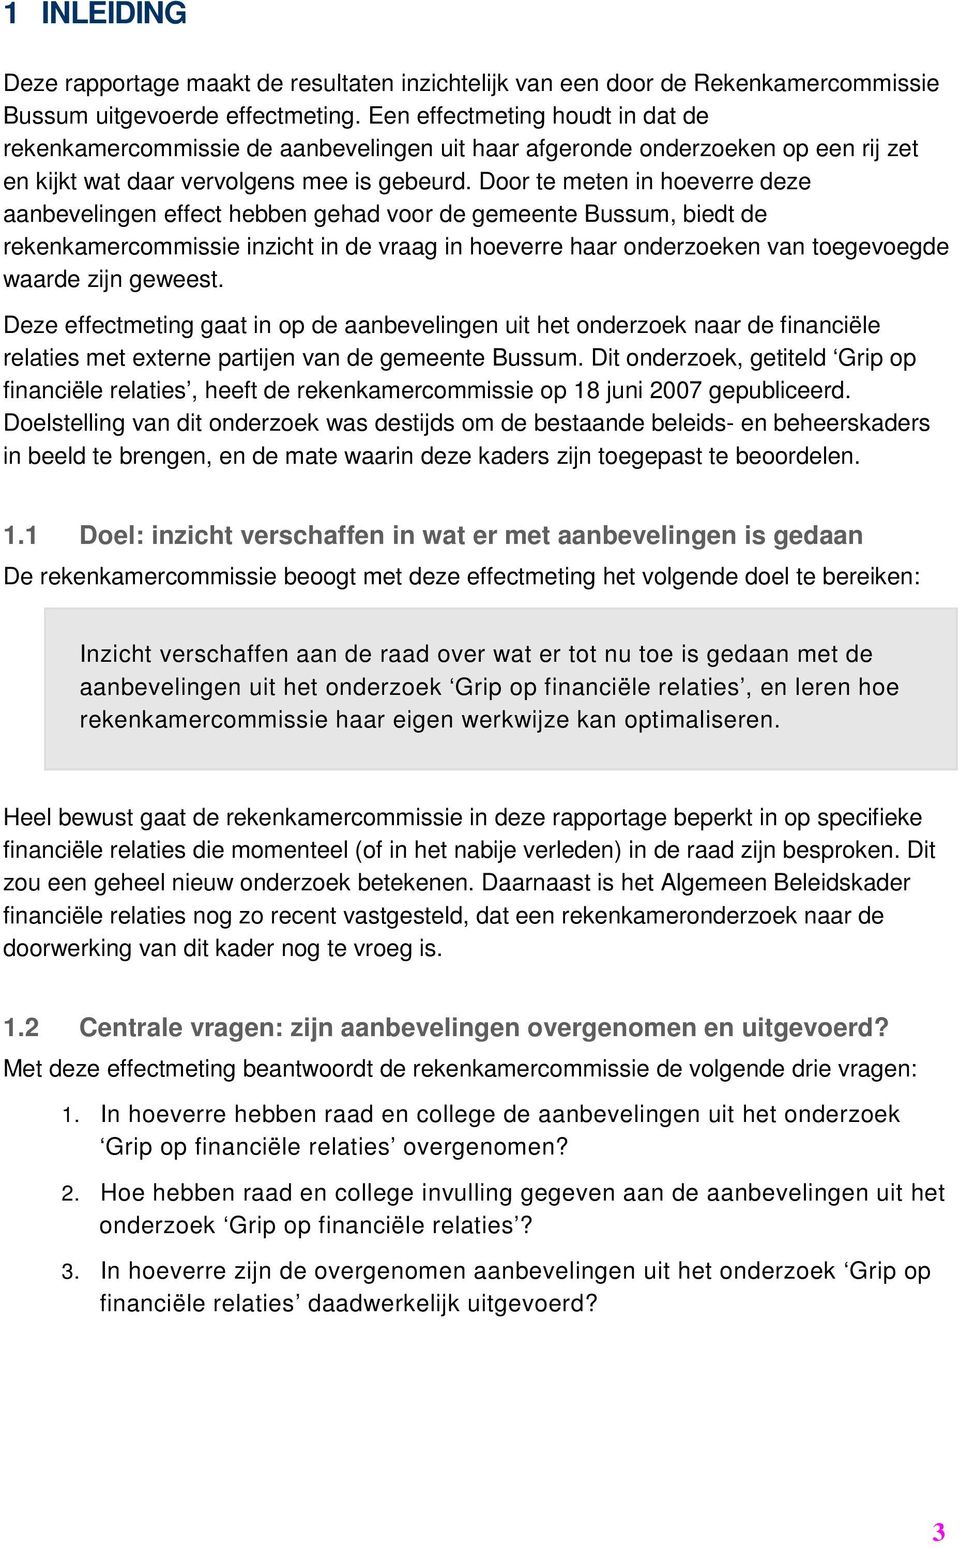 Door te meten in hoeverre deze aanbevelingen effect hebben gehad voor de gemeente Bussum, biedt de rekenkamercommissie inzicht in de vraag in hoeverre haar onderzoeken van toegevoegde waarde zijn